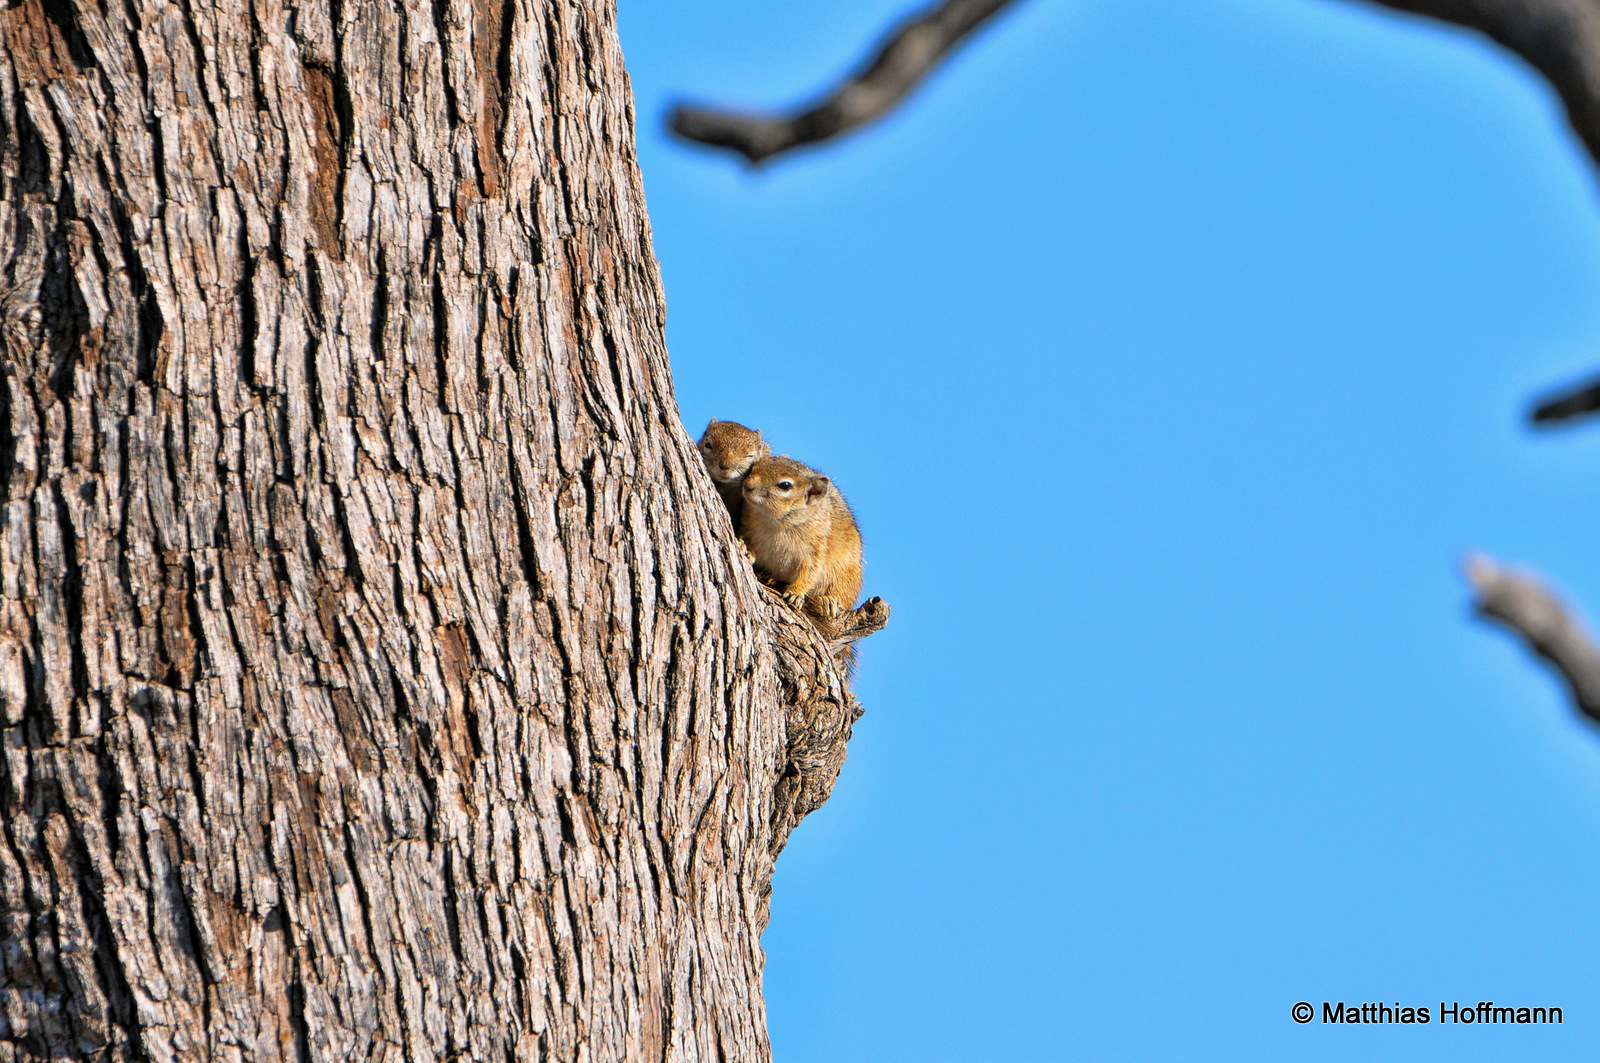 Erdhörnchen | Ground squirrel | Hwange National Park | Zimbabwe